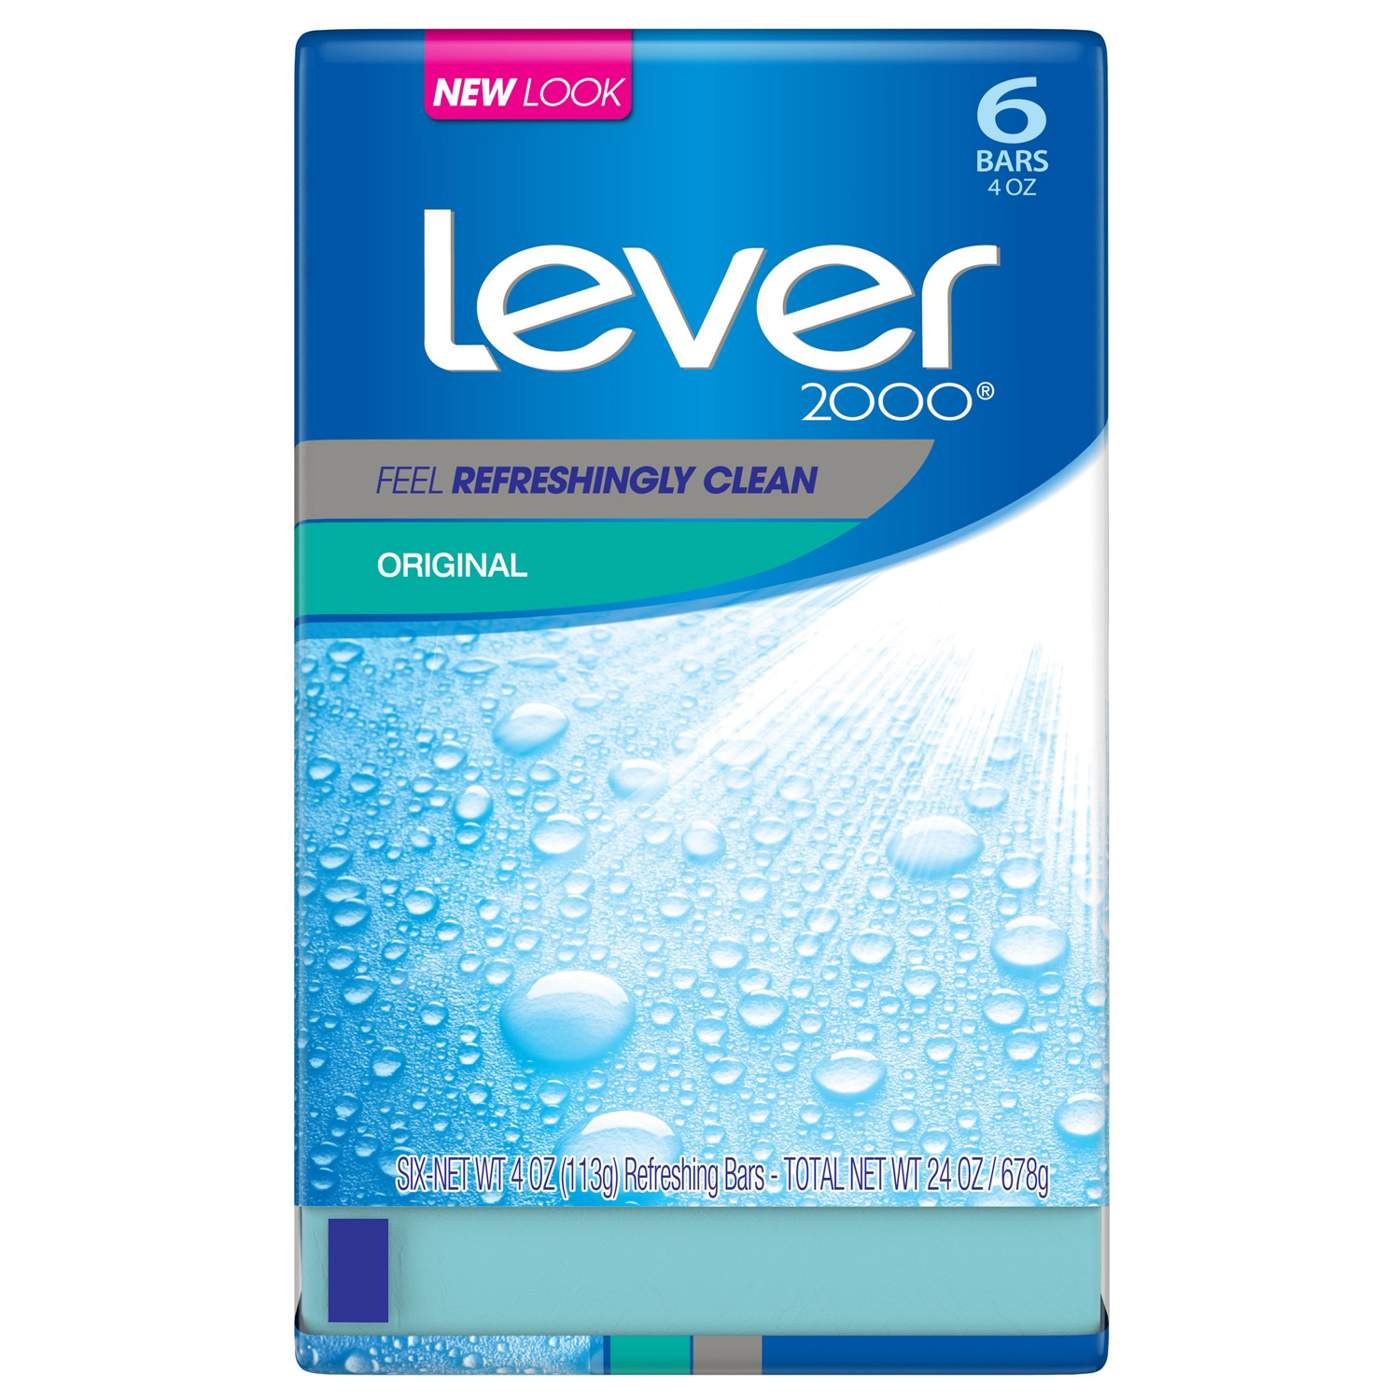 Lever 2000 Original Bar Soap 6 pk; image 2 of 4